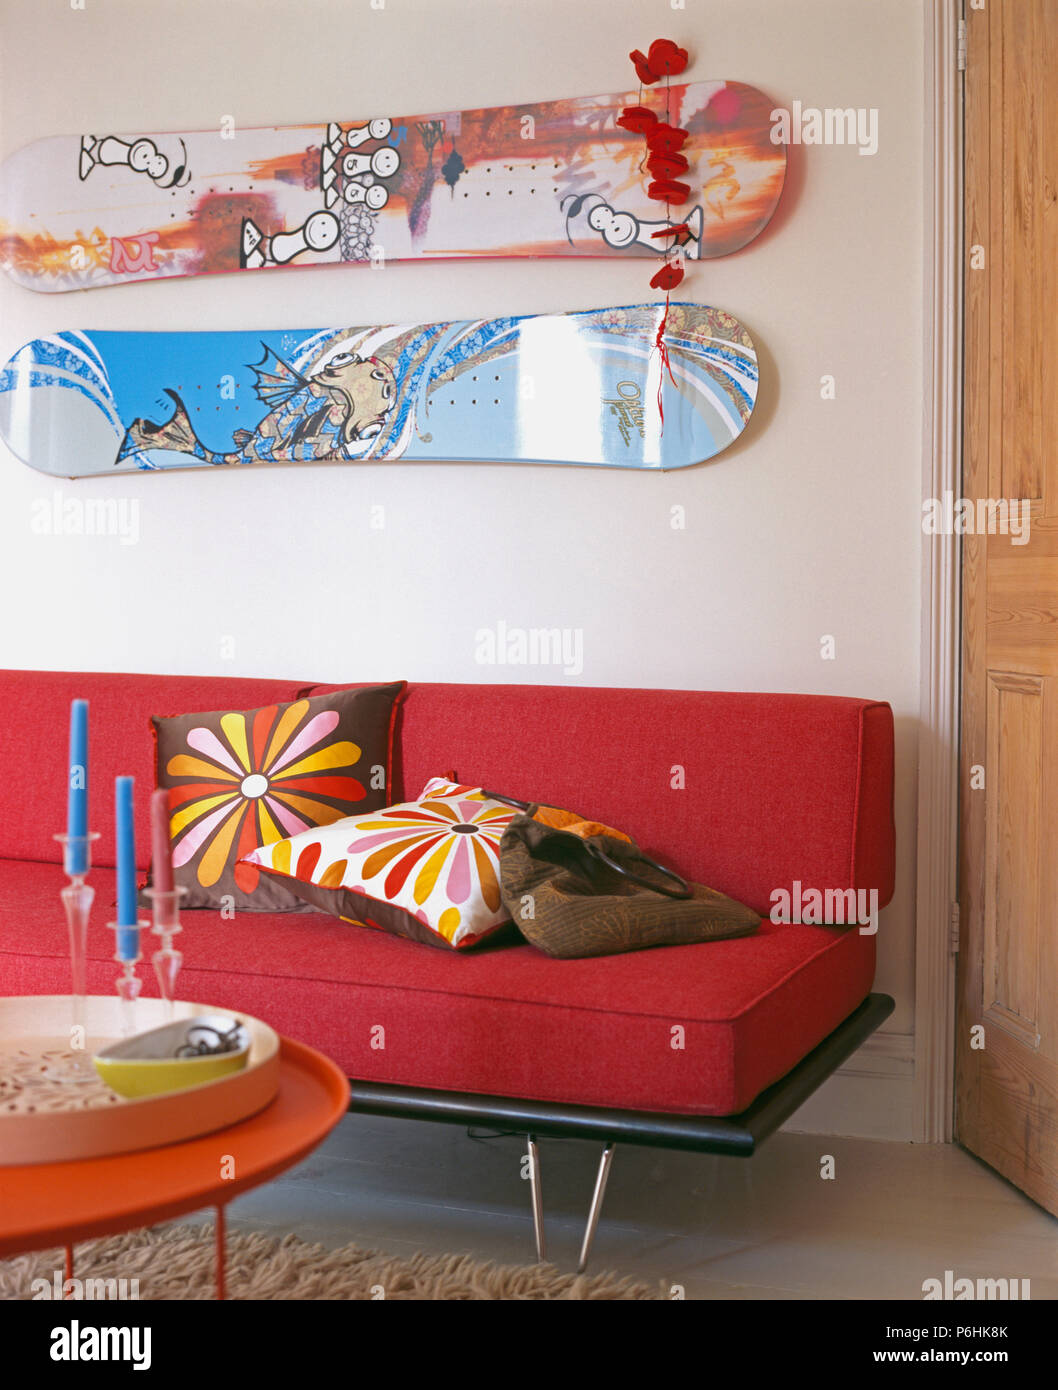 Zwei skateboards an der Wand über dem roten Sofa mit bunten Kissen in modernes weißes Wohnzimmer Stockfoto